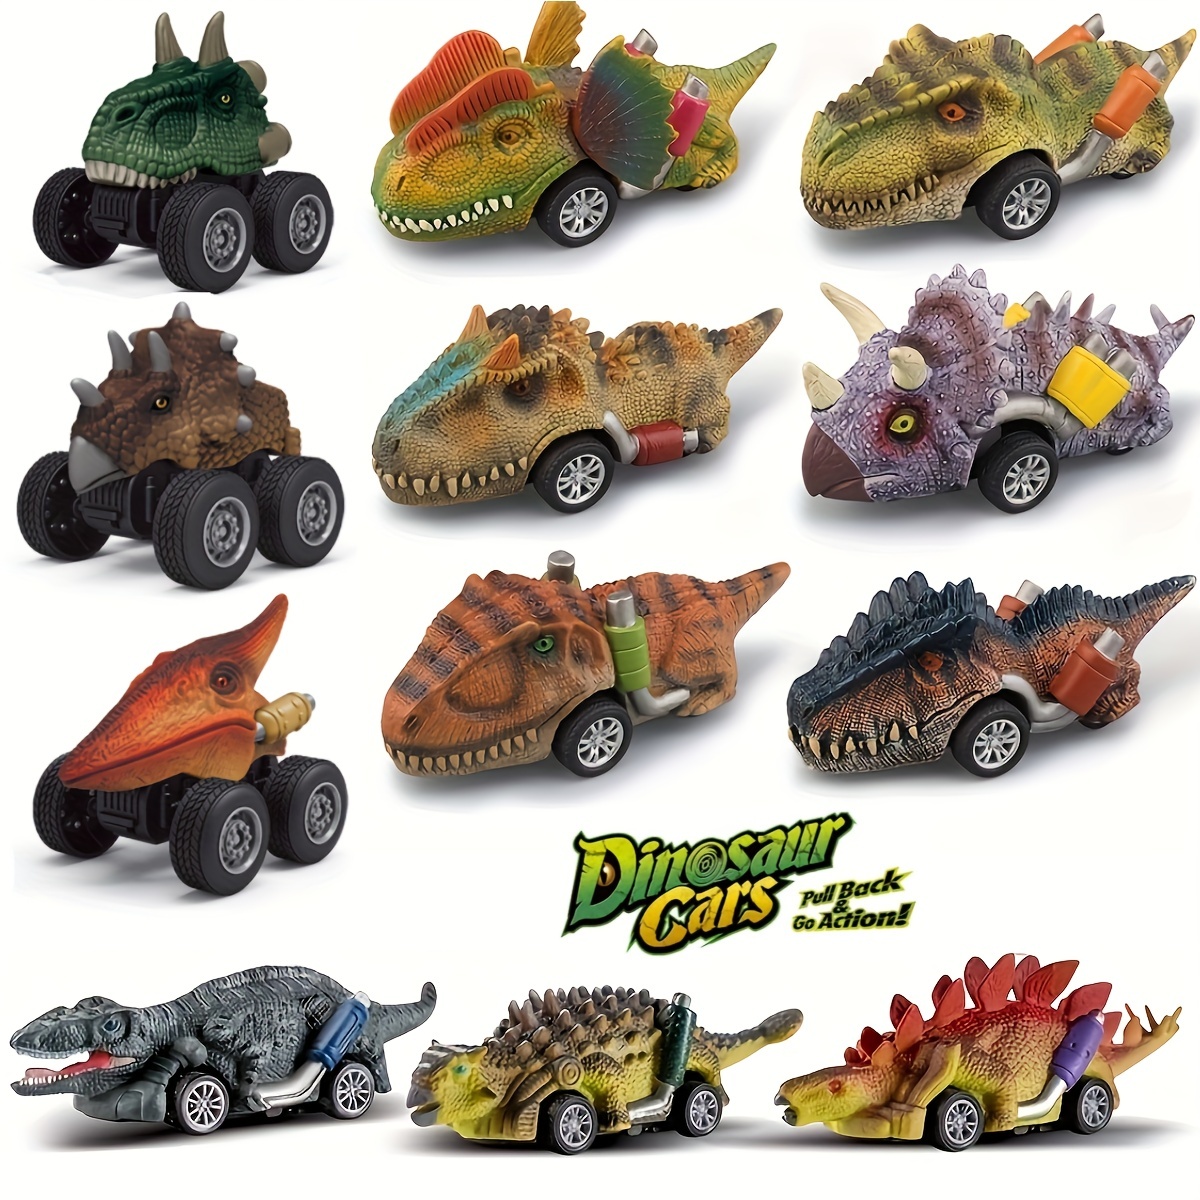 Leryveo 2 Pcs Jouets de Camion de Dinosaure - Voiture catapulte de  Dinosaure de Dessin animé - Cadeaux de fête durables, Jouet Dinosaure  créatif